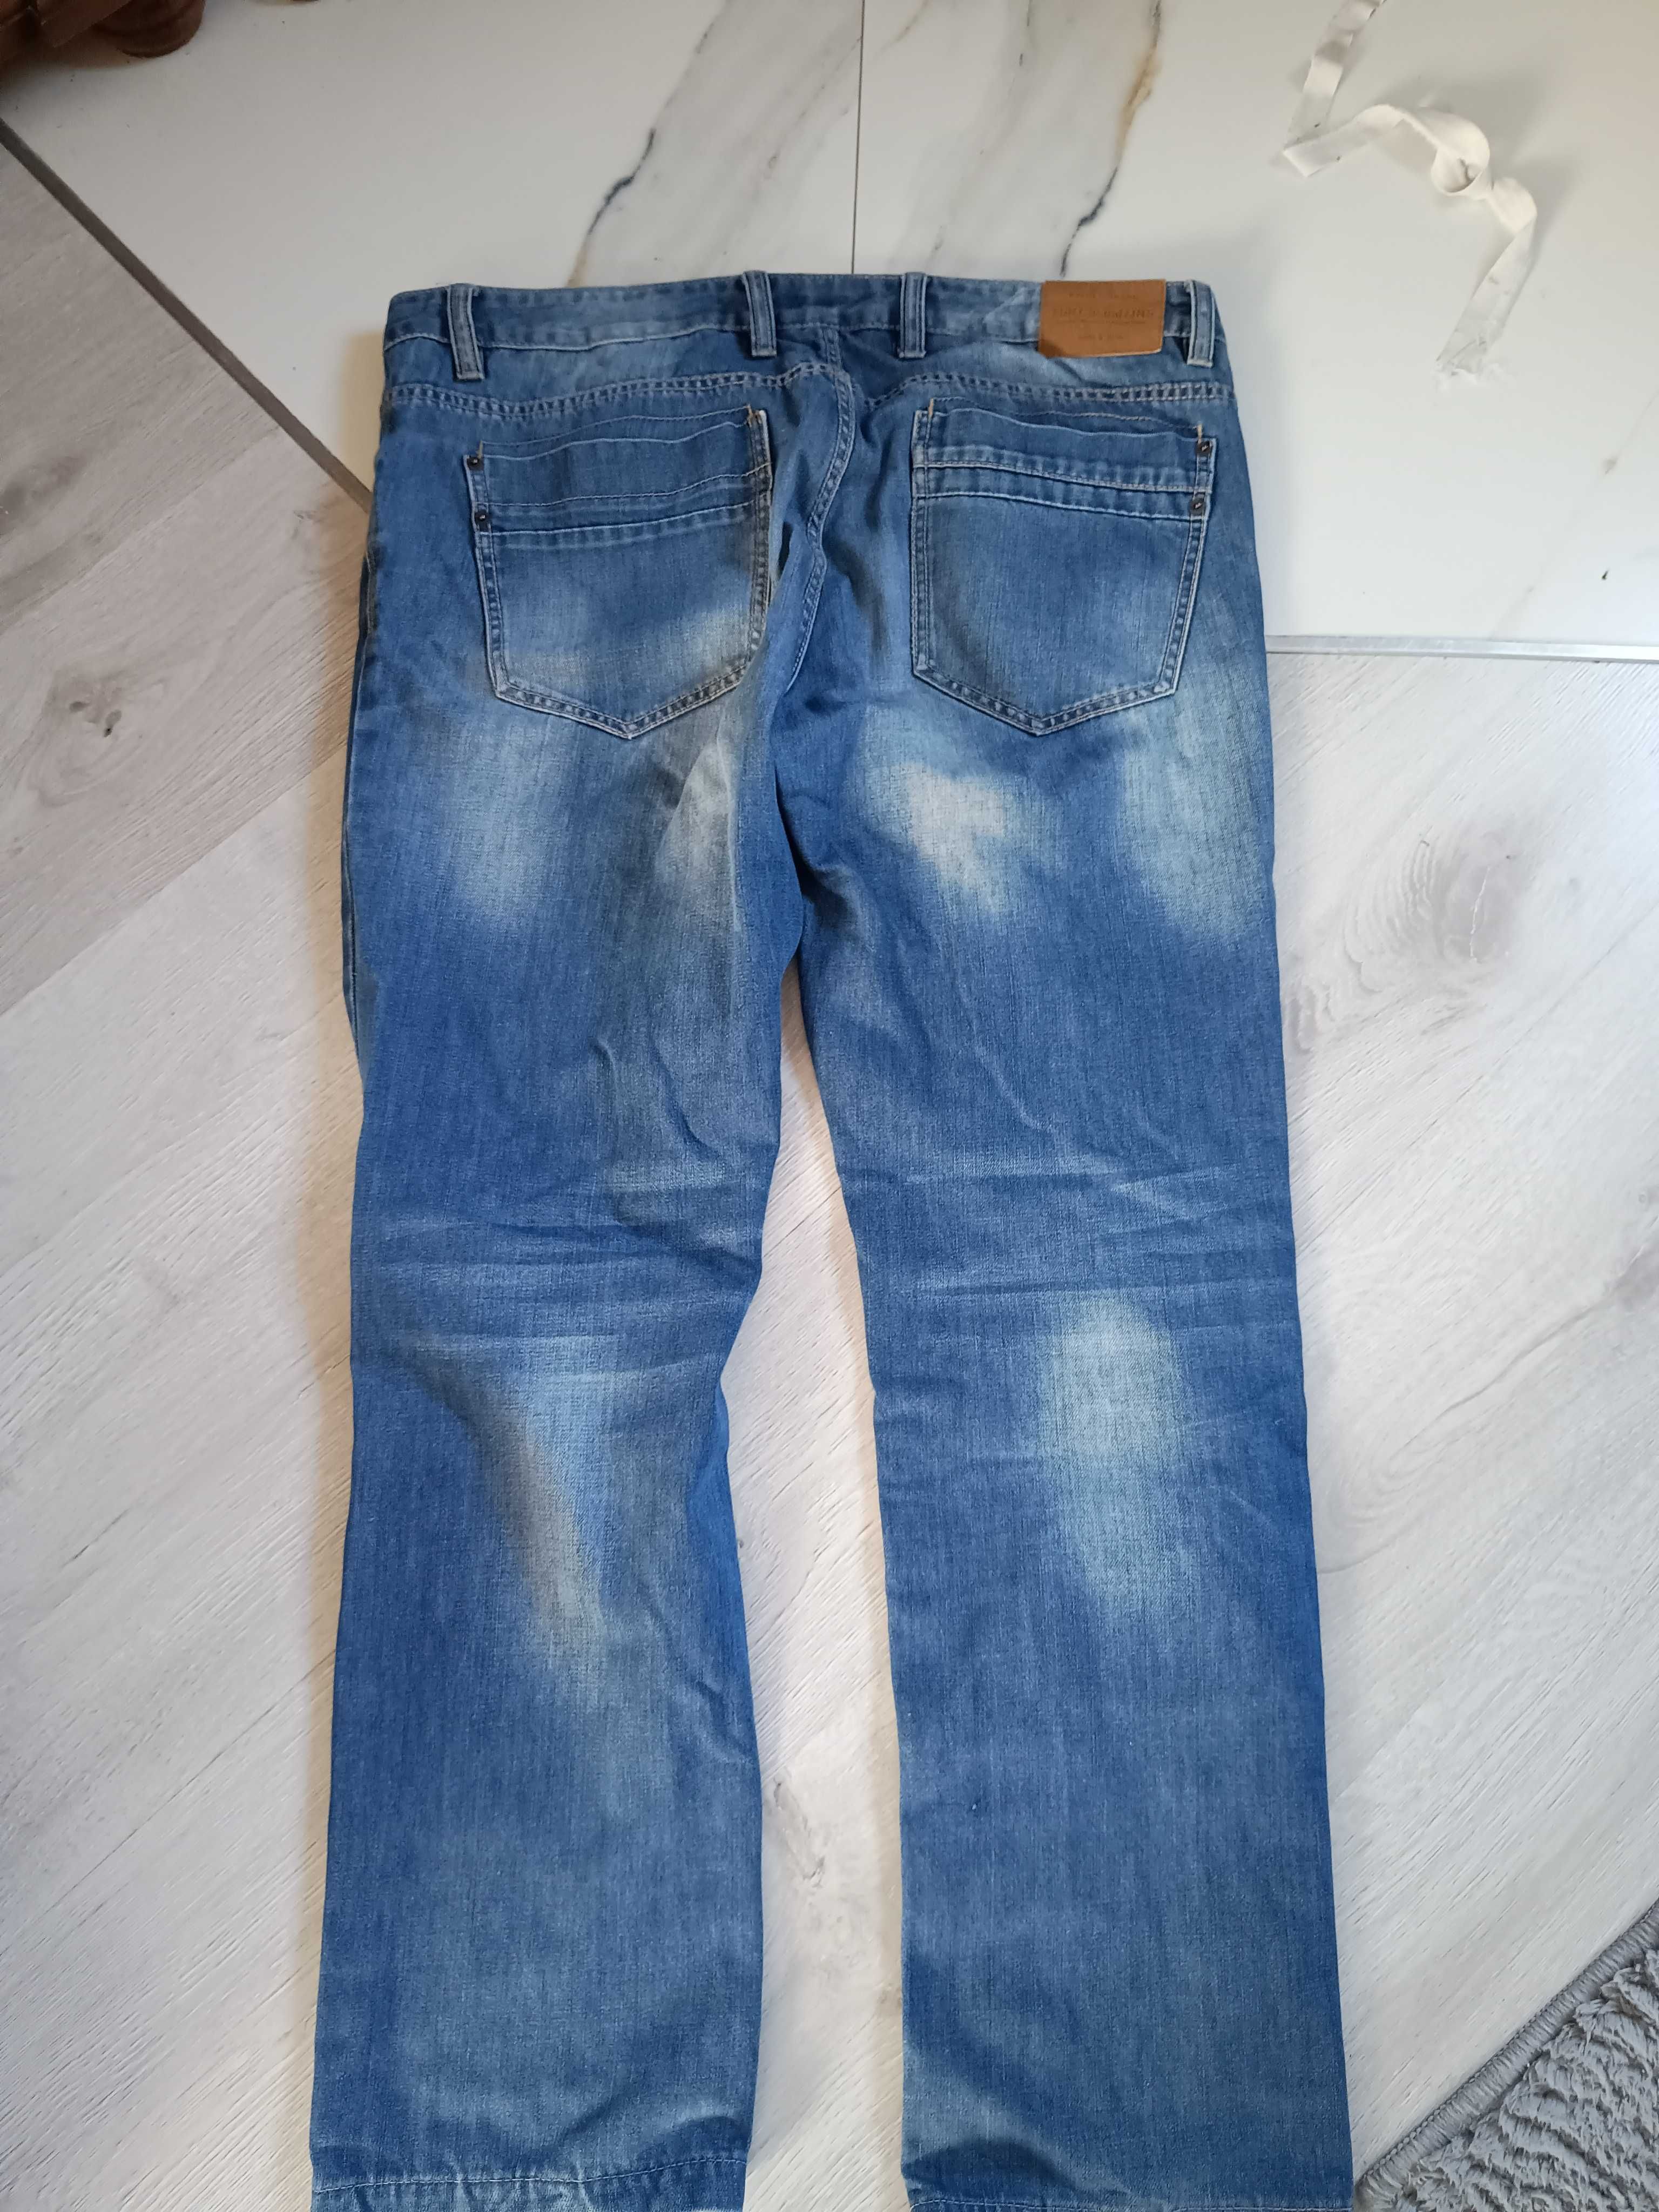 Spodnie męskie dzinsy jeansy casual i inne XXL 56